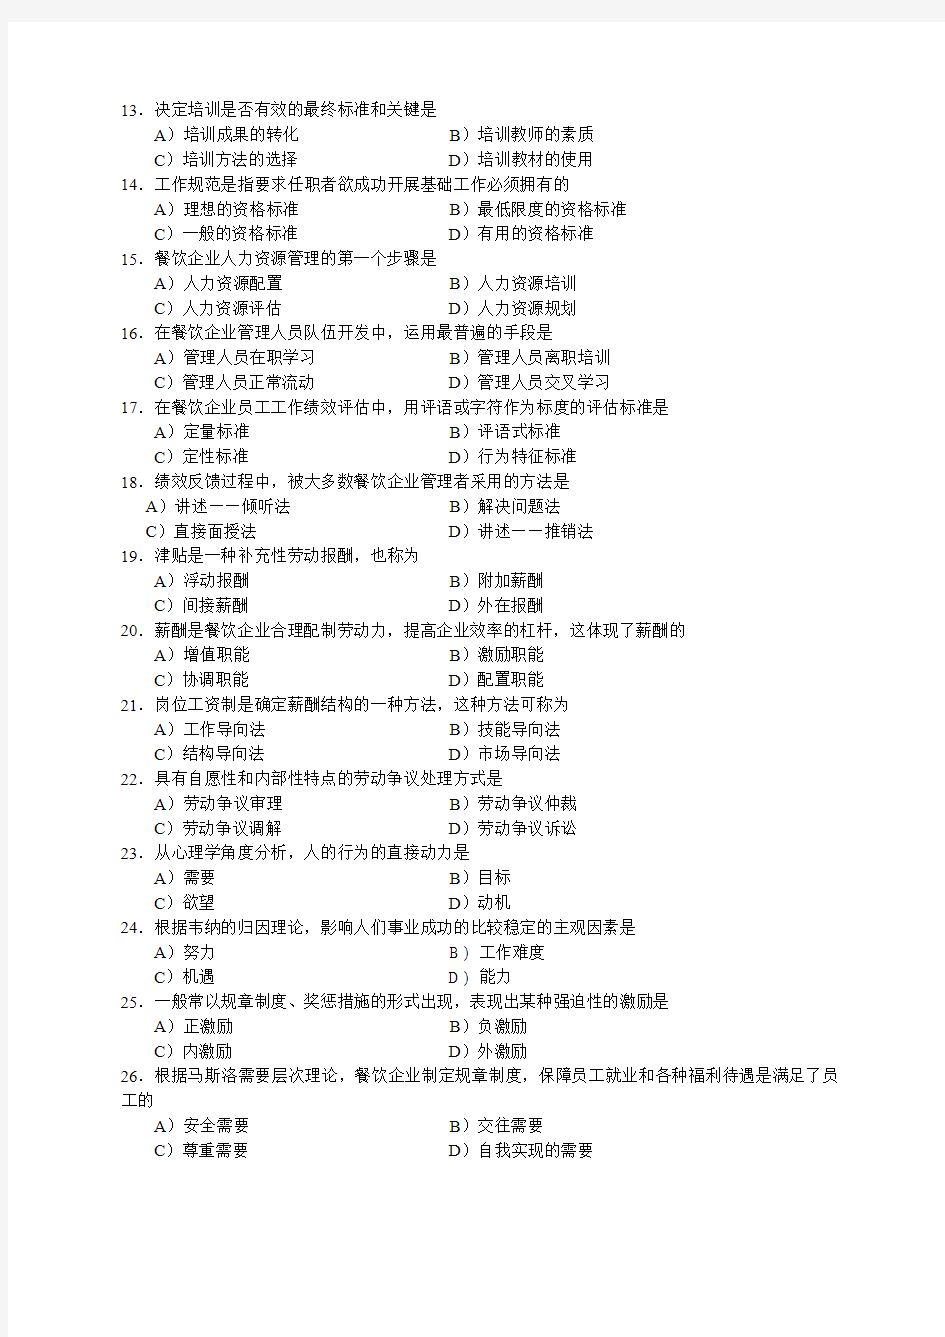 2006年5月中国餐饮业职业经理人资格证书考试(高级)餐饮企业人力资源管理试题